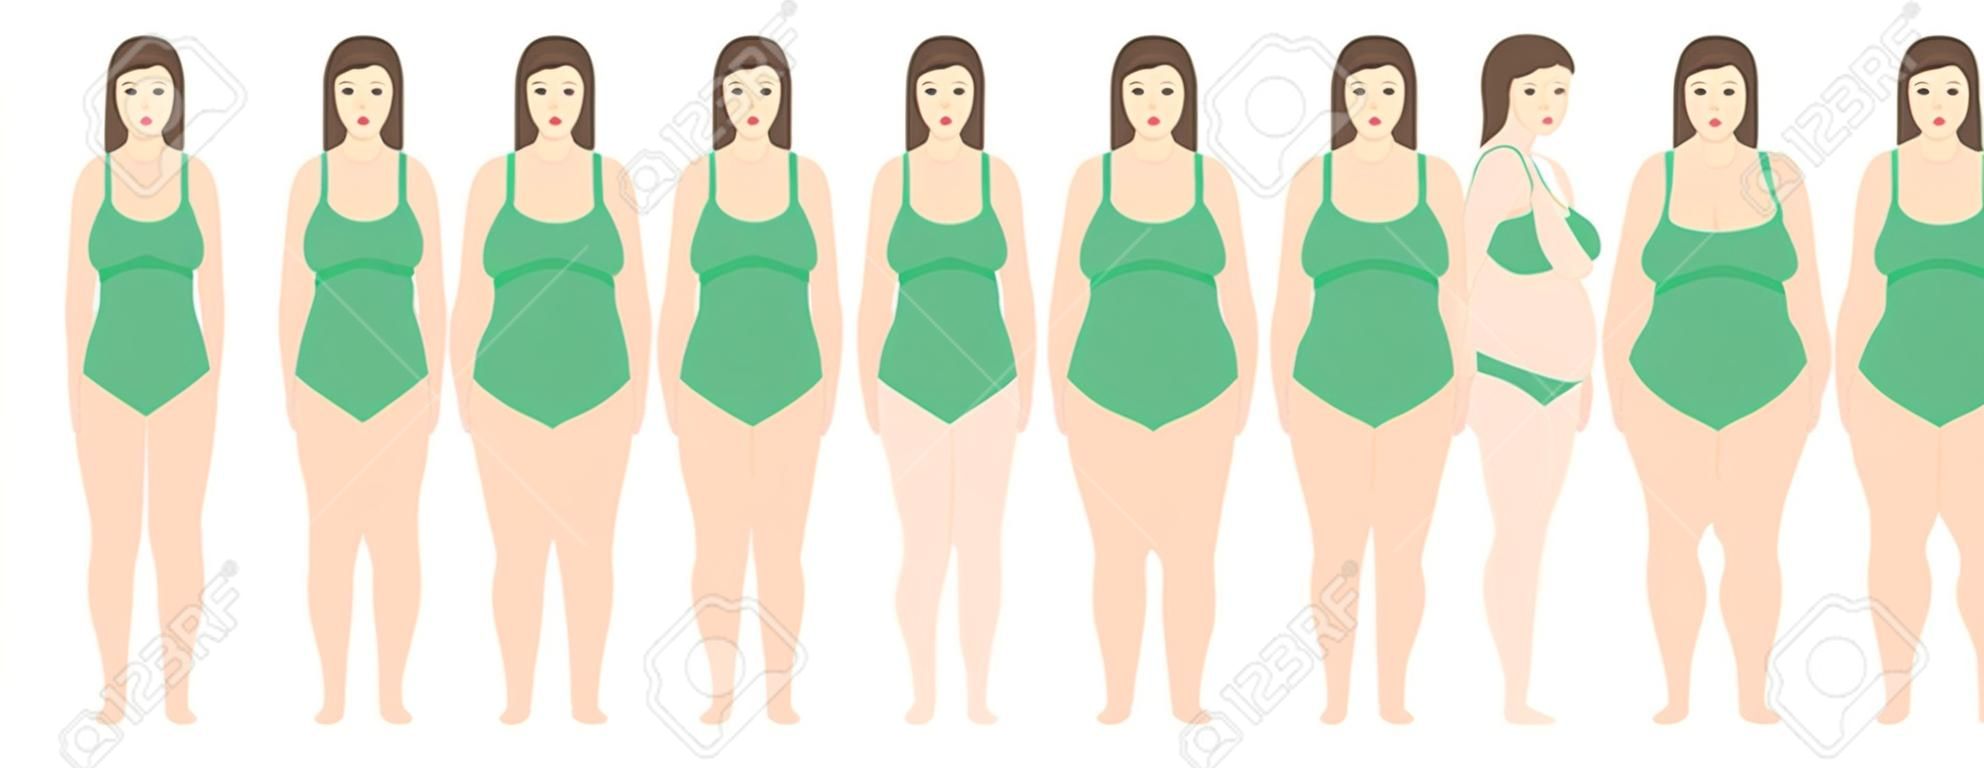 Векторная иллюстрация женщин с разным весом от анорексии до очень ожирения. Индекс массы тела, концепция потери веса.